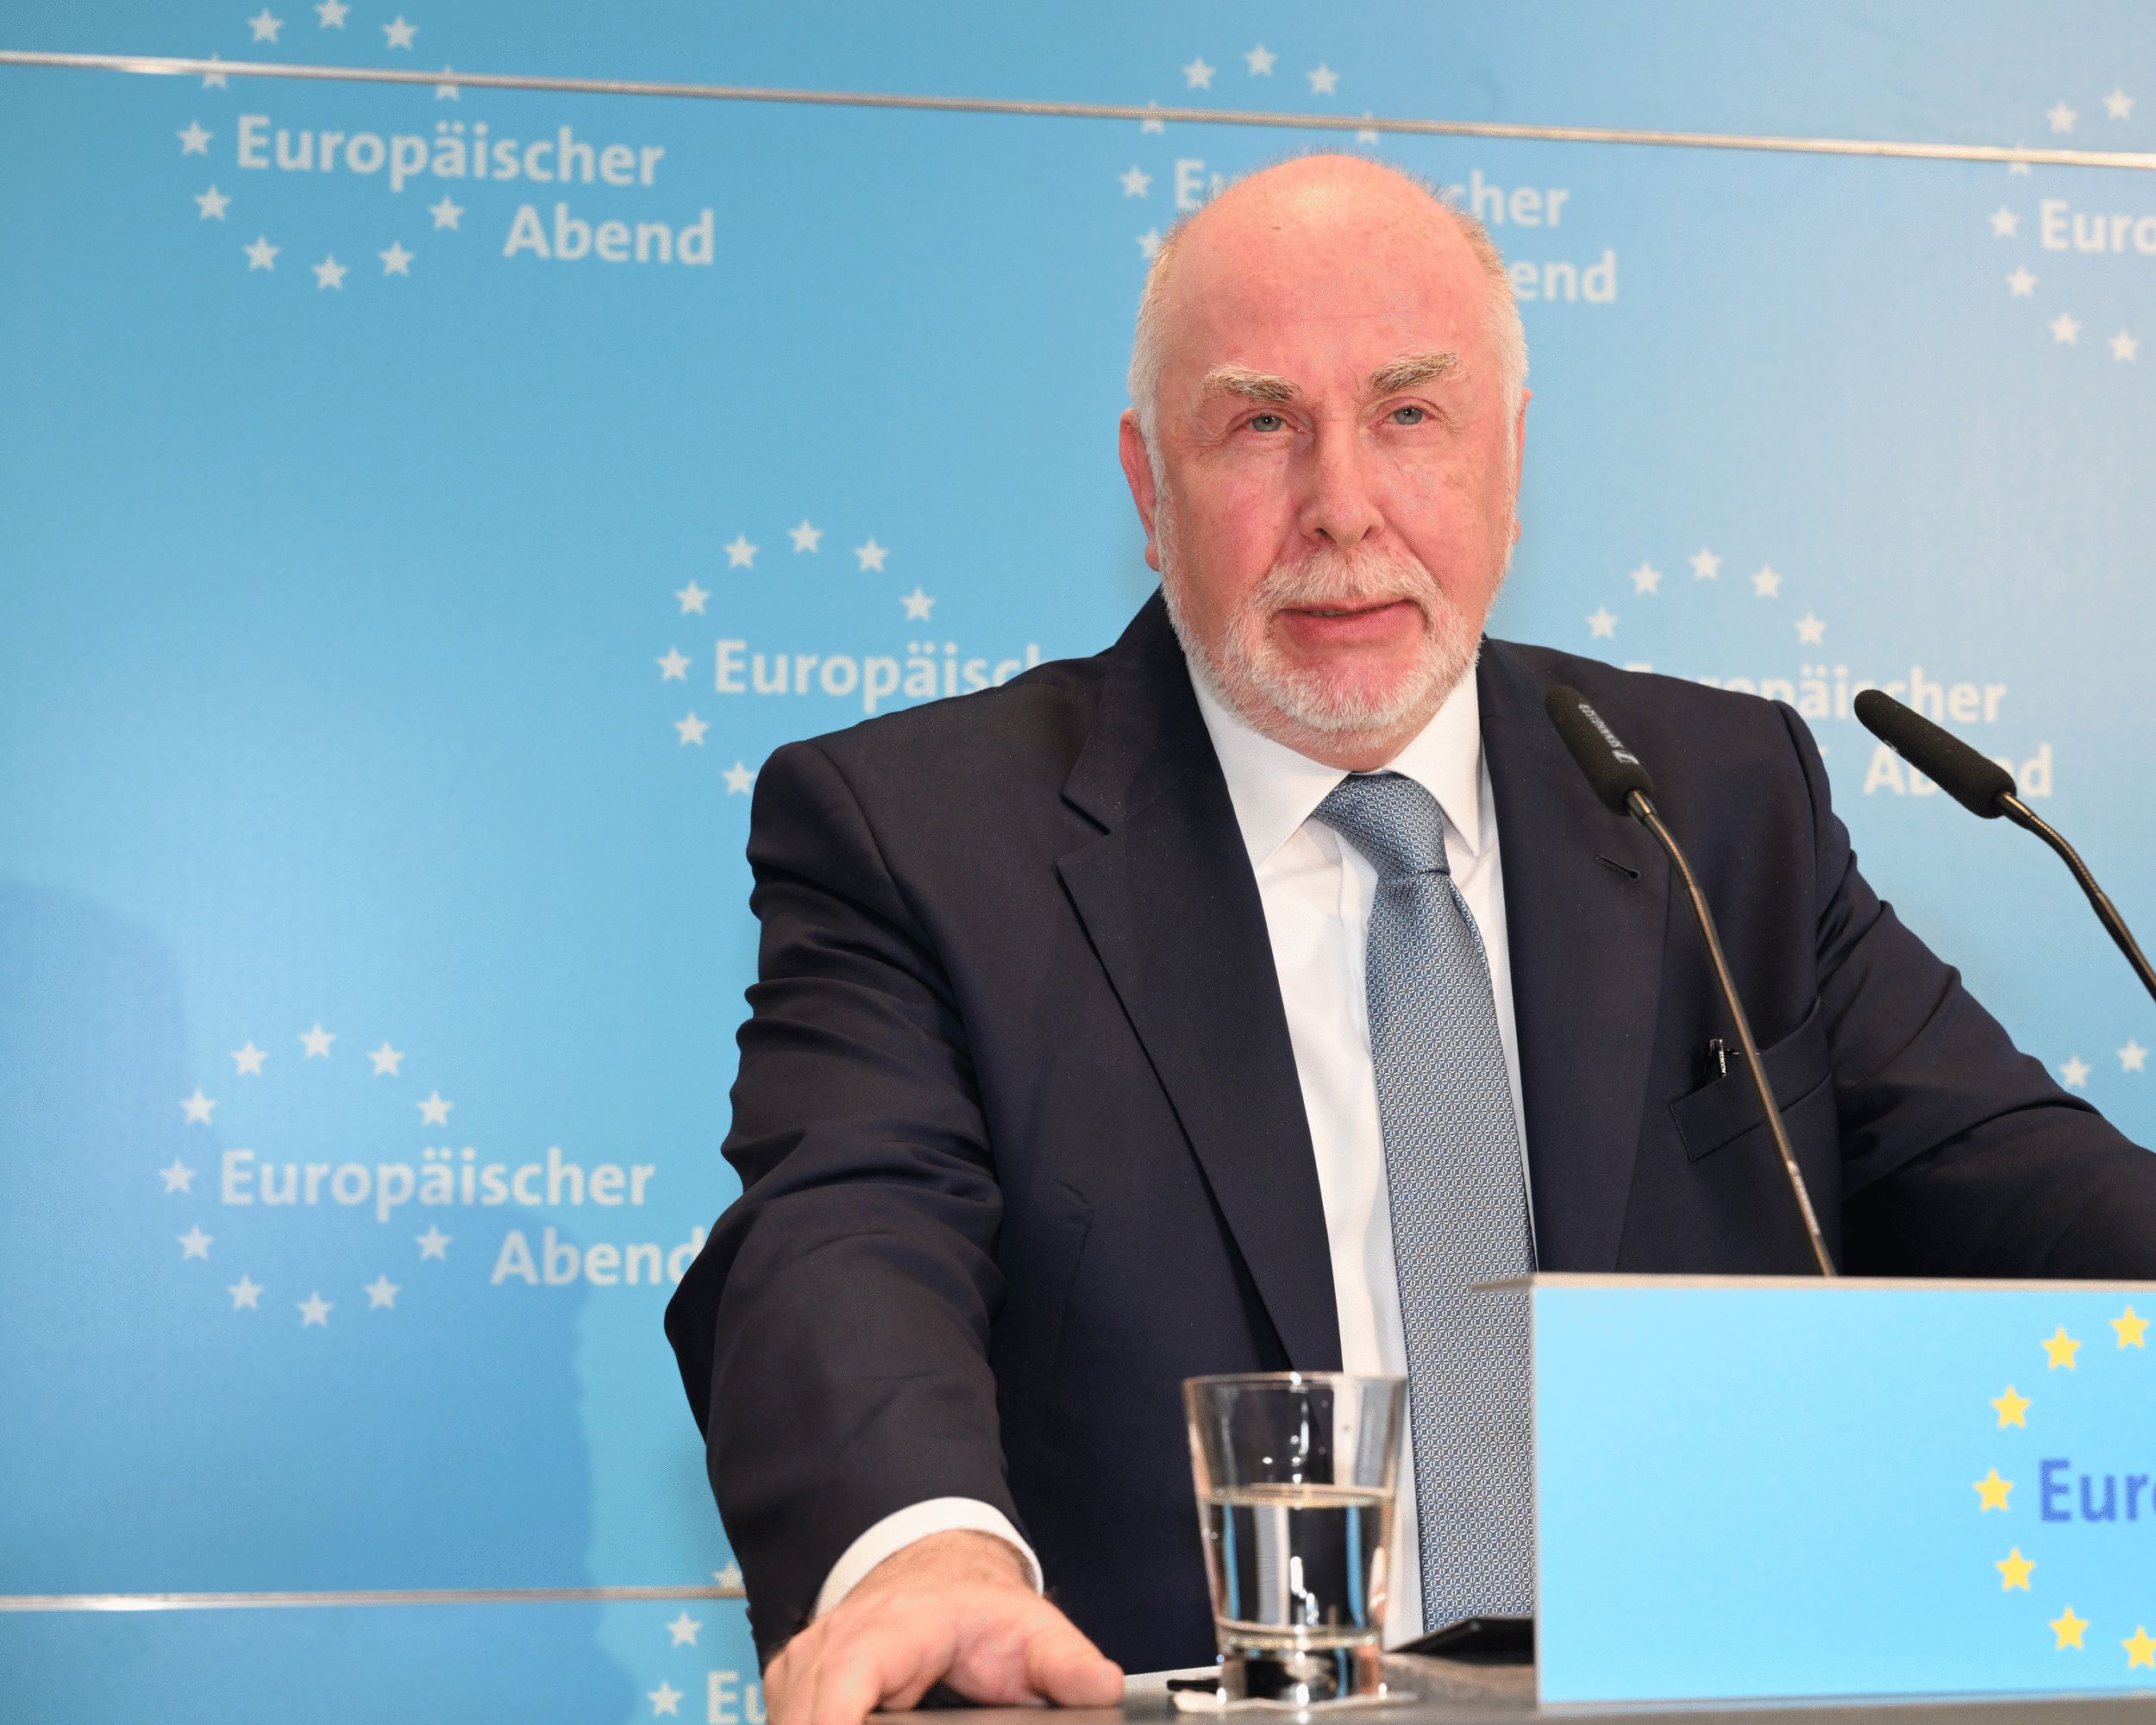 Europawahl: dbb Chef warnt vor extremistischen Parteien